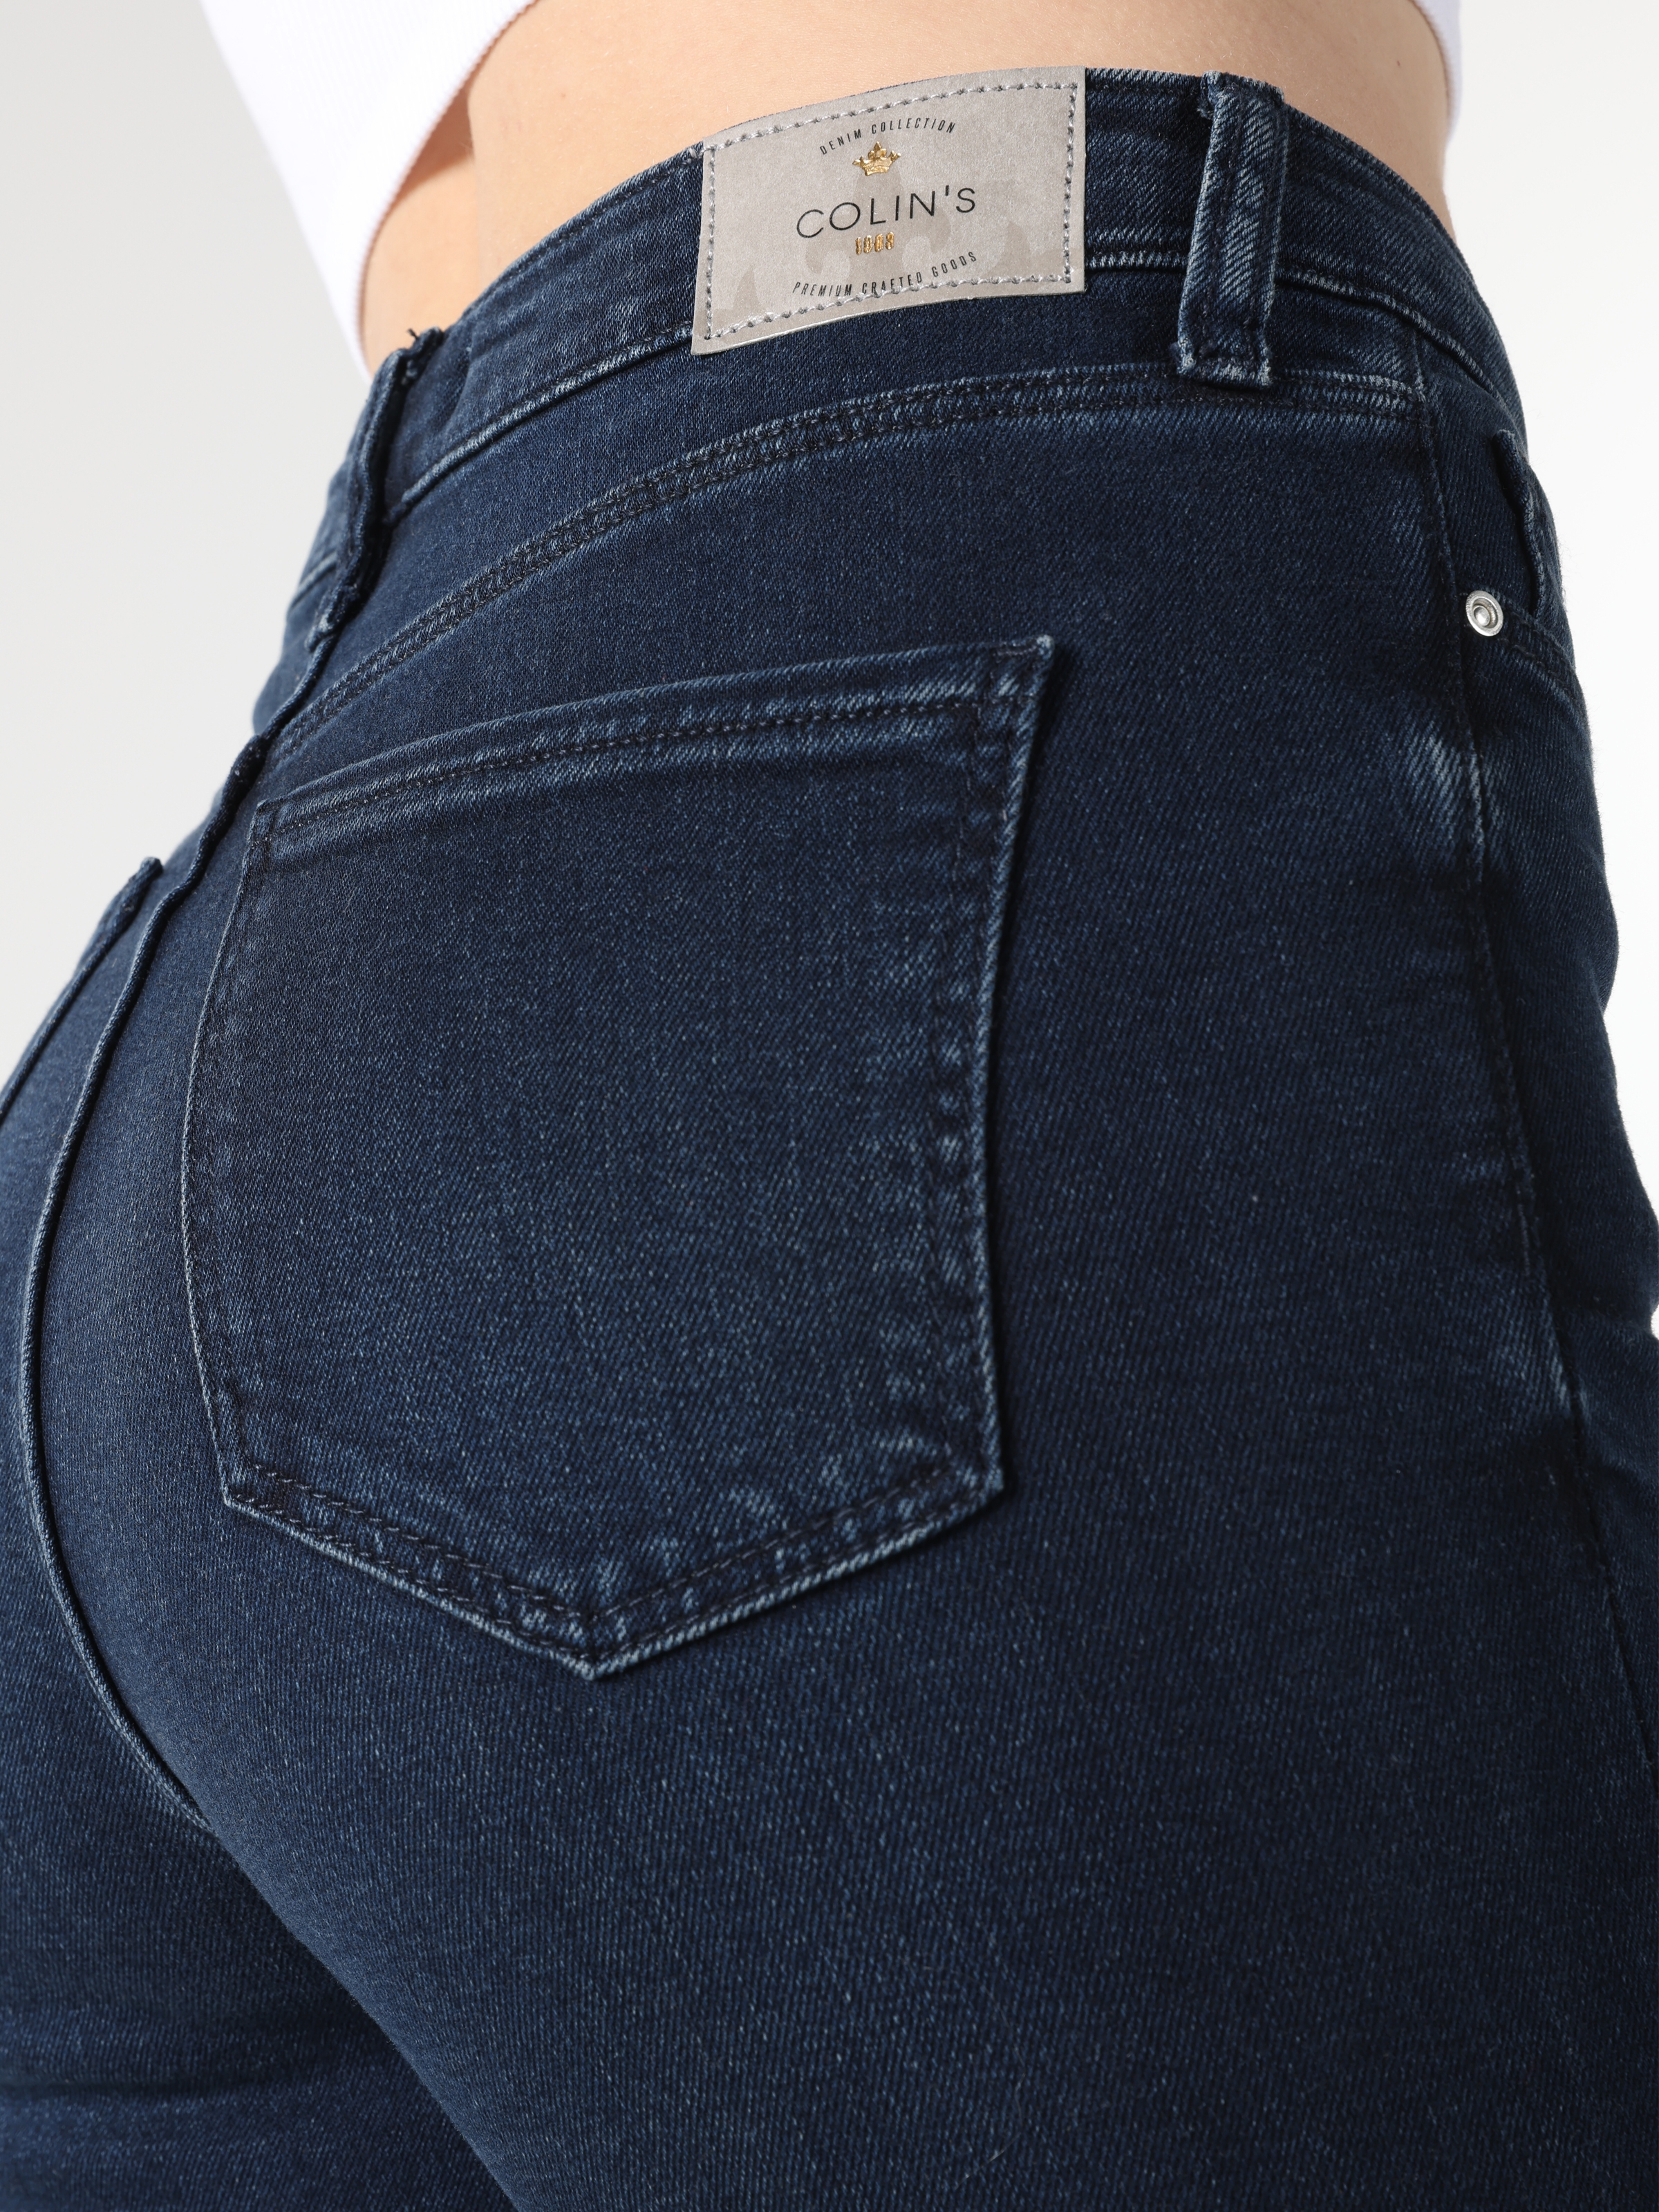 Afficher les détails de Pantalon 760 Diana Super Slim Fit Taille Haute Jambe Skinny Bleu Foncé Pour Femme